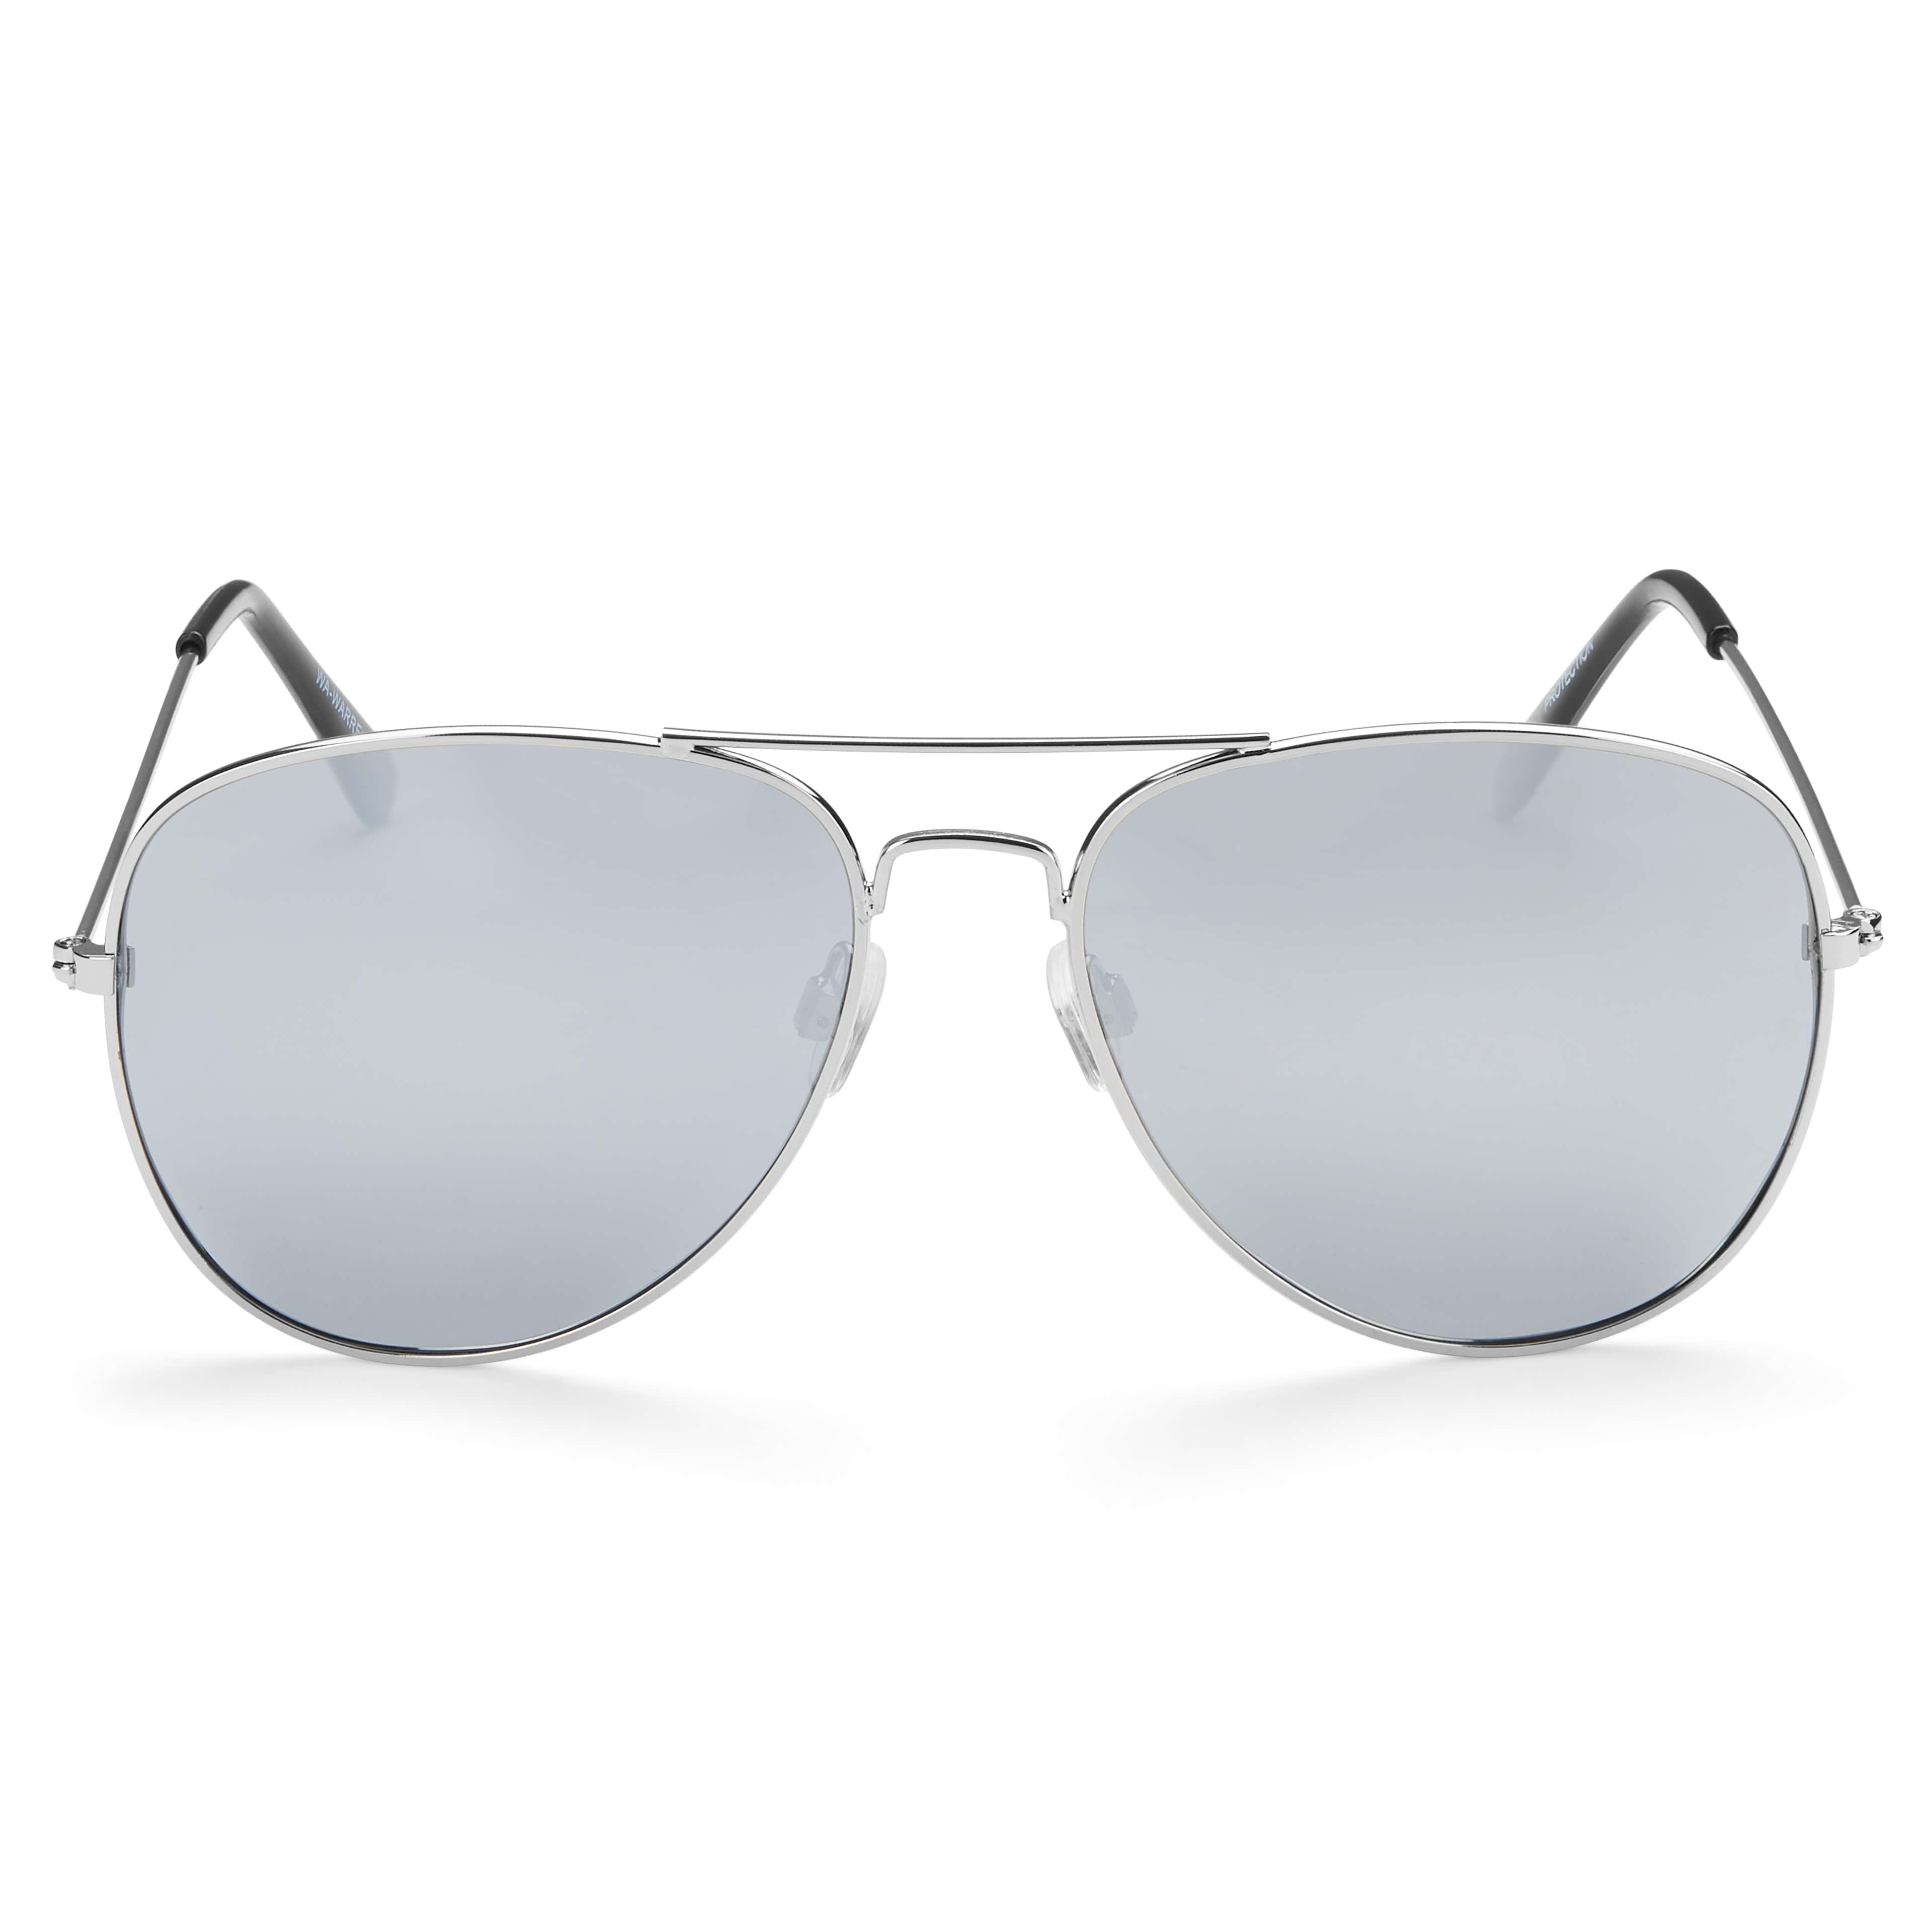 Warren Silver-Tone Aviator Sunglasses - 2 - hover gallery